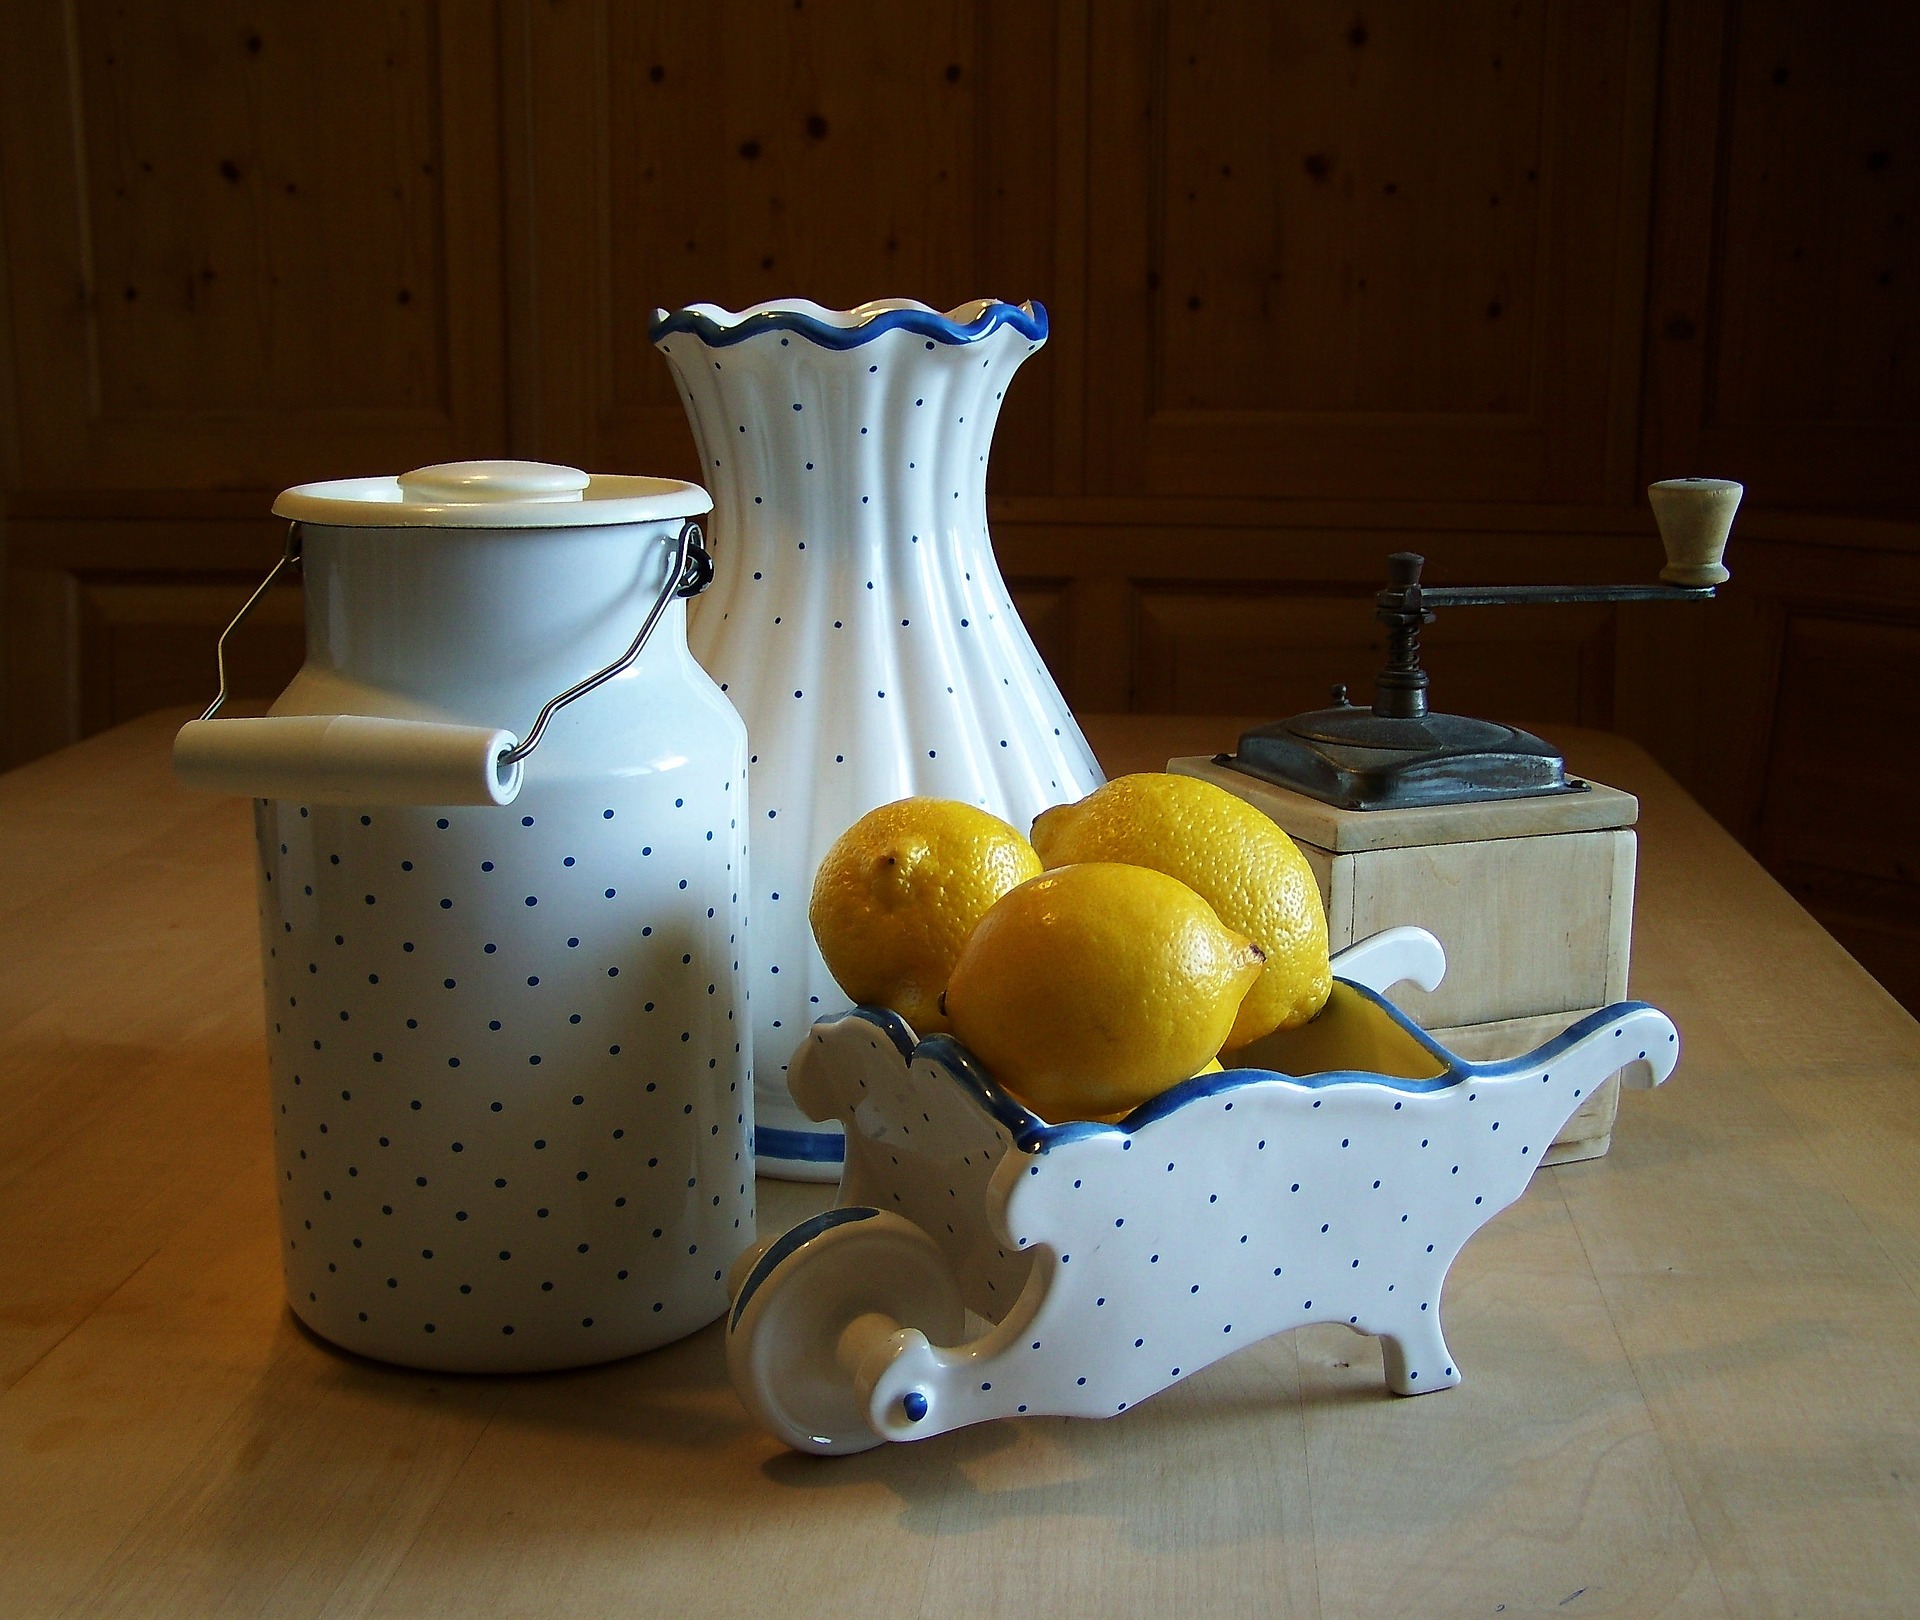 Lemon Cream Recipe | image: tappancs pixabay.com